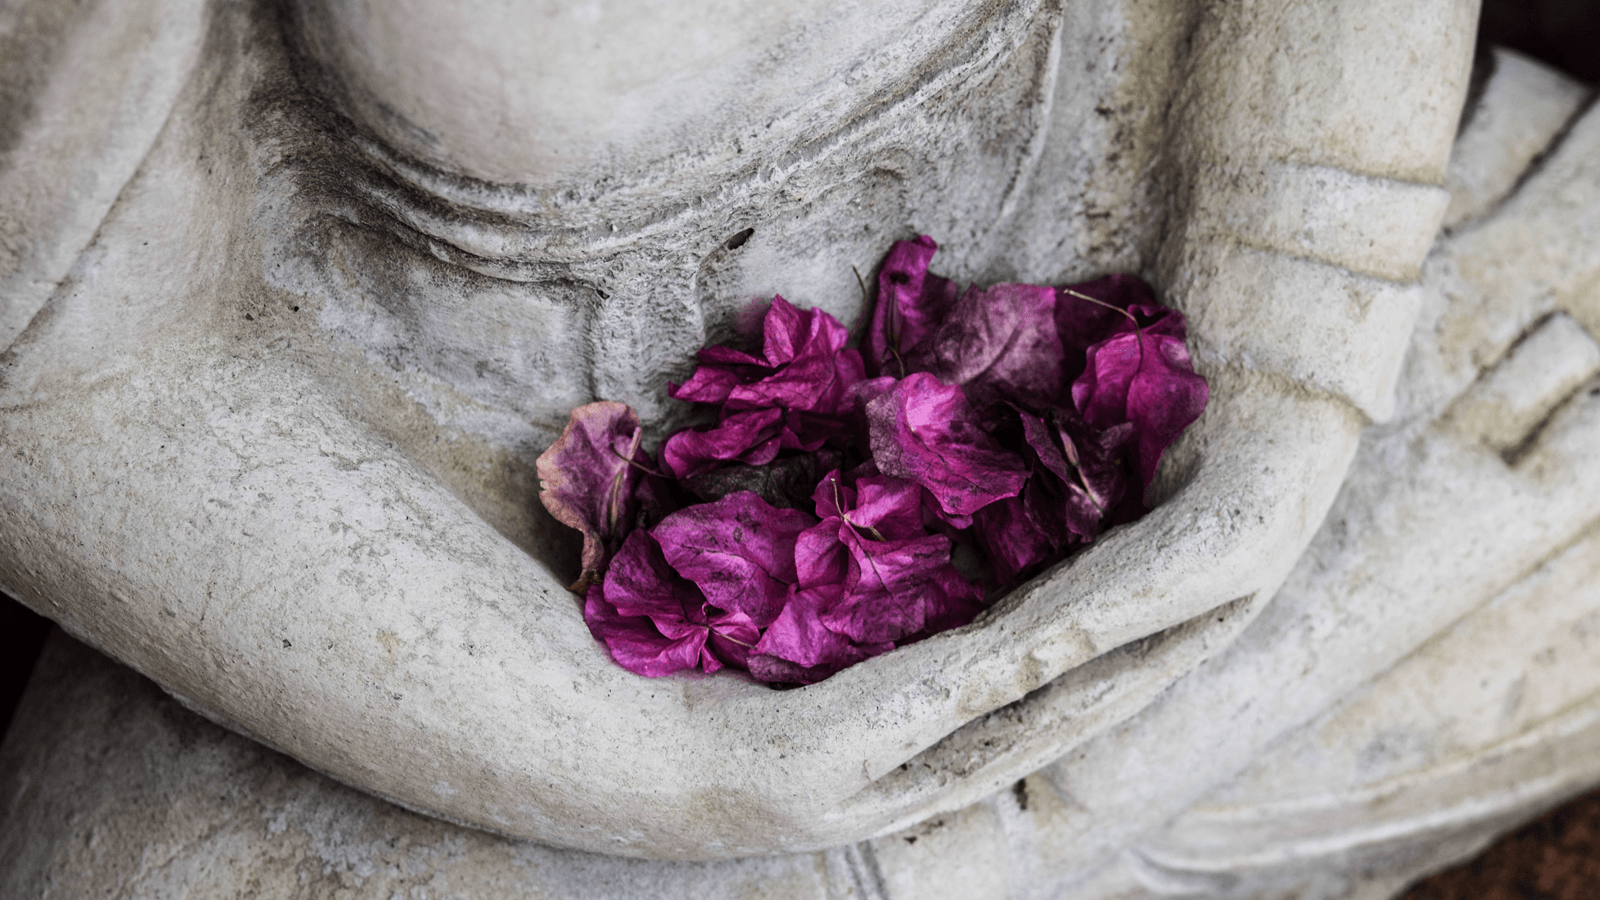 Thiền Vipassana là phương pháp luyện tập thiền cổ xưa, cách đây 2.500 năm, có nguồn gốc từ đất nước Ấn Độ, được các thiền sư dịch nghĩa là “thấy sự việc đúng như thật”. Đây chính là bí quyết giúp mang đến sự thư thái, an lạc cho tâm hồn một cách hiệu quả cao.